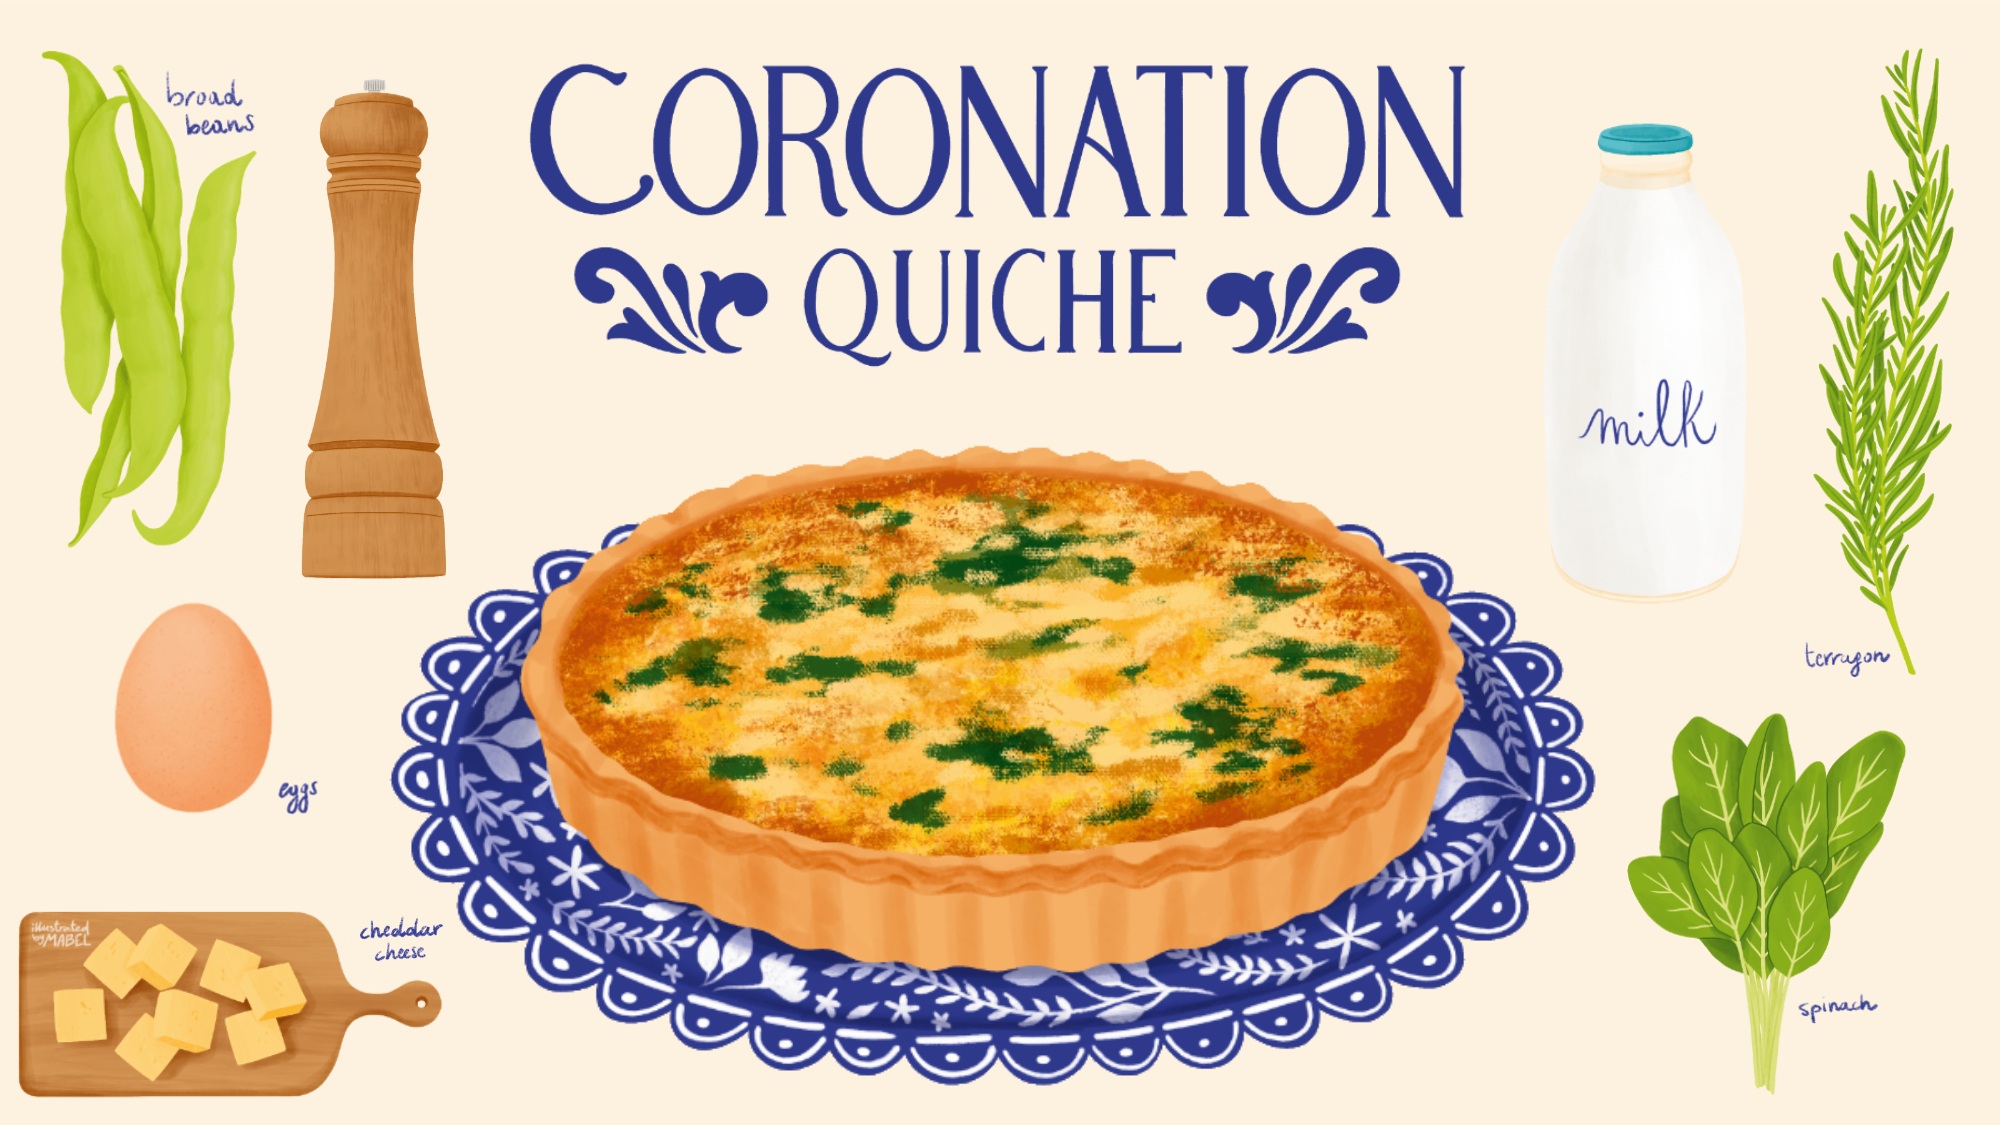 Coronation Quiche Recipe Illustration